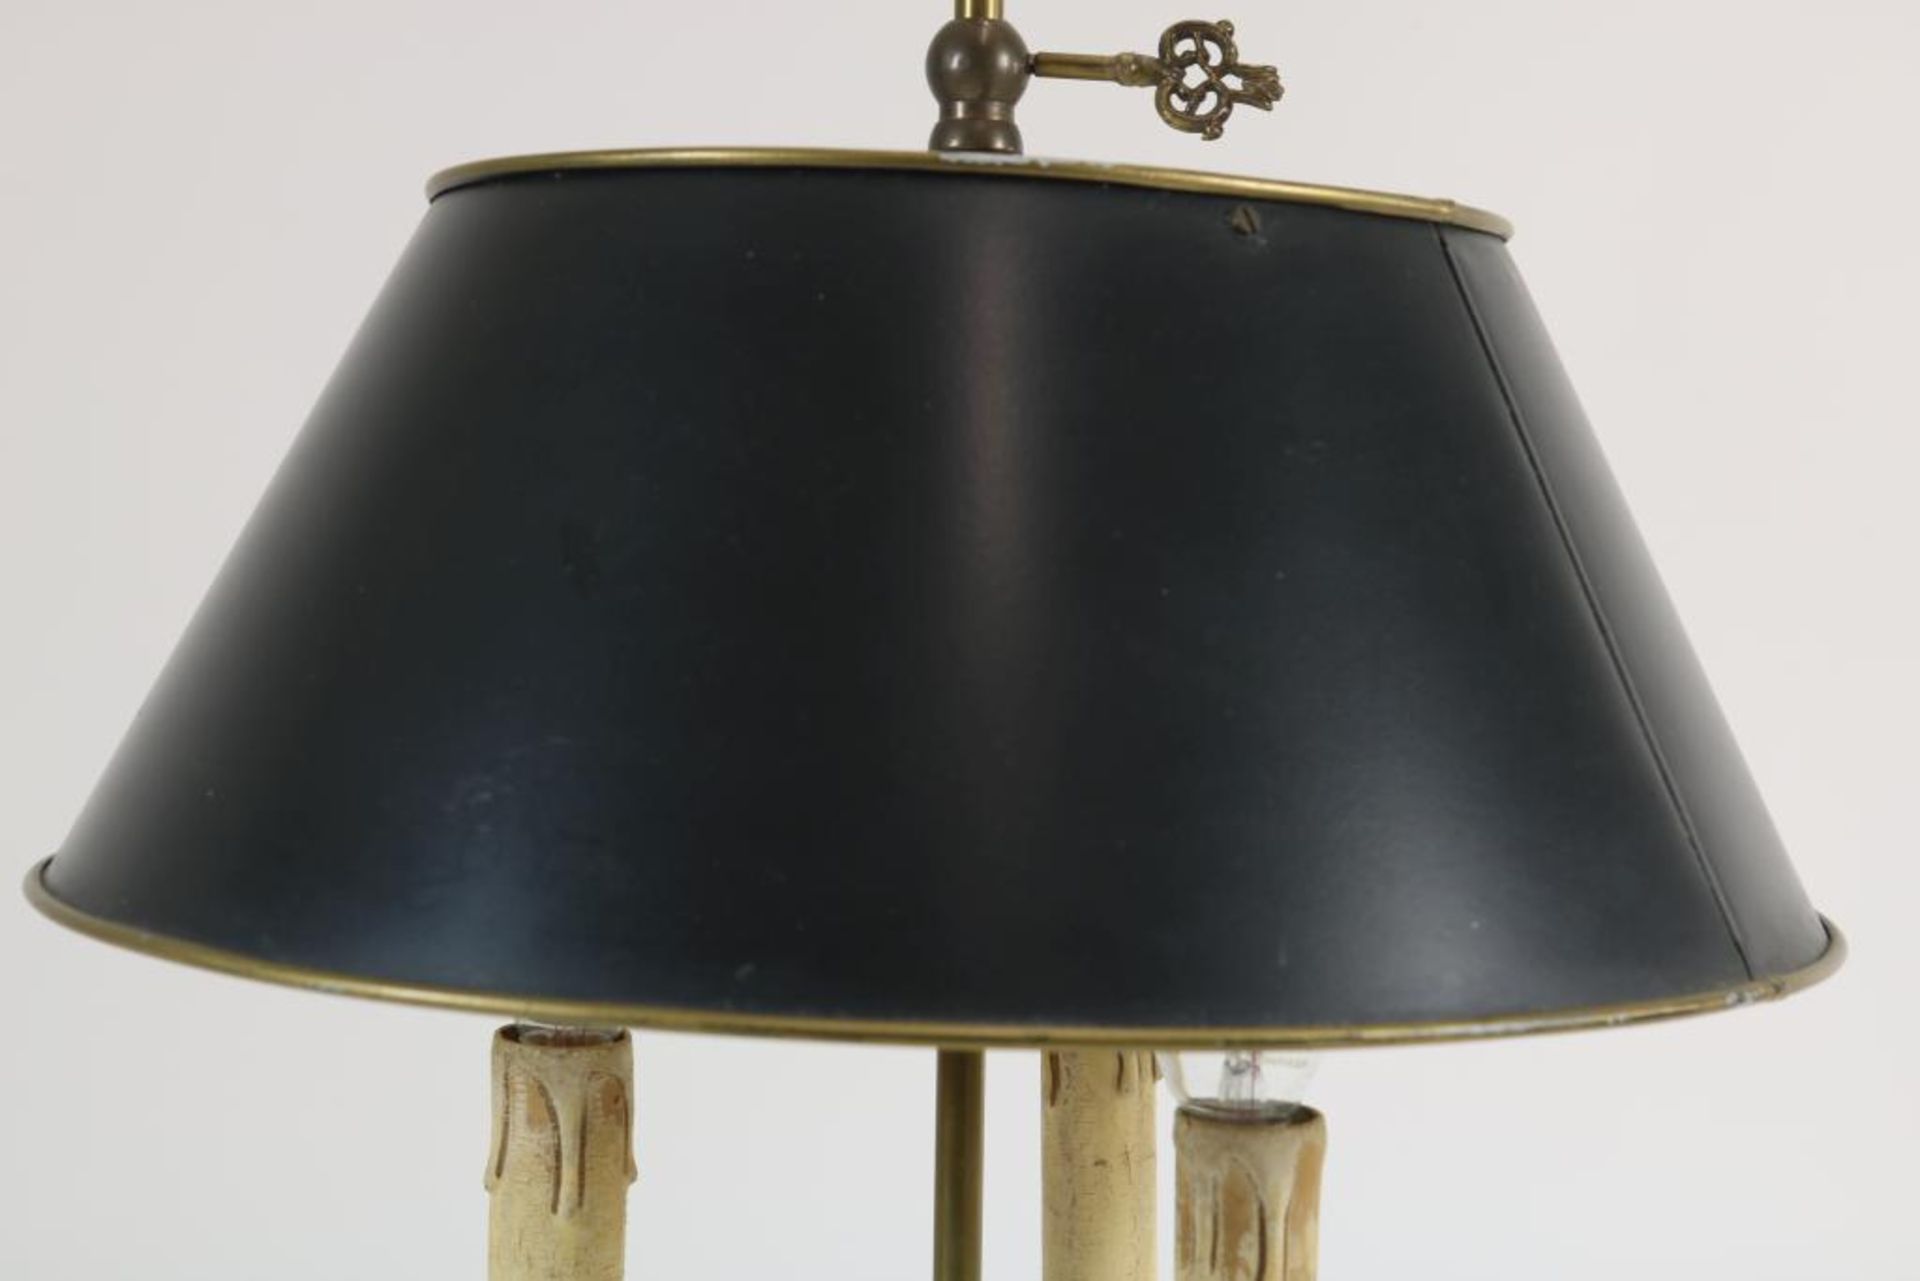 Koperen Bouilotte tafellamp - Image 2 of 3